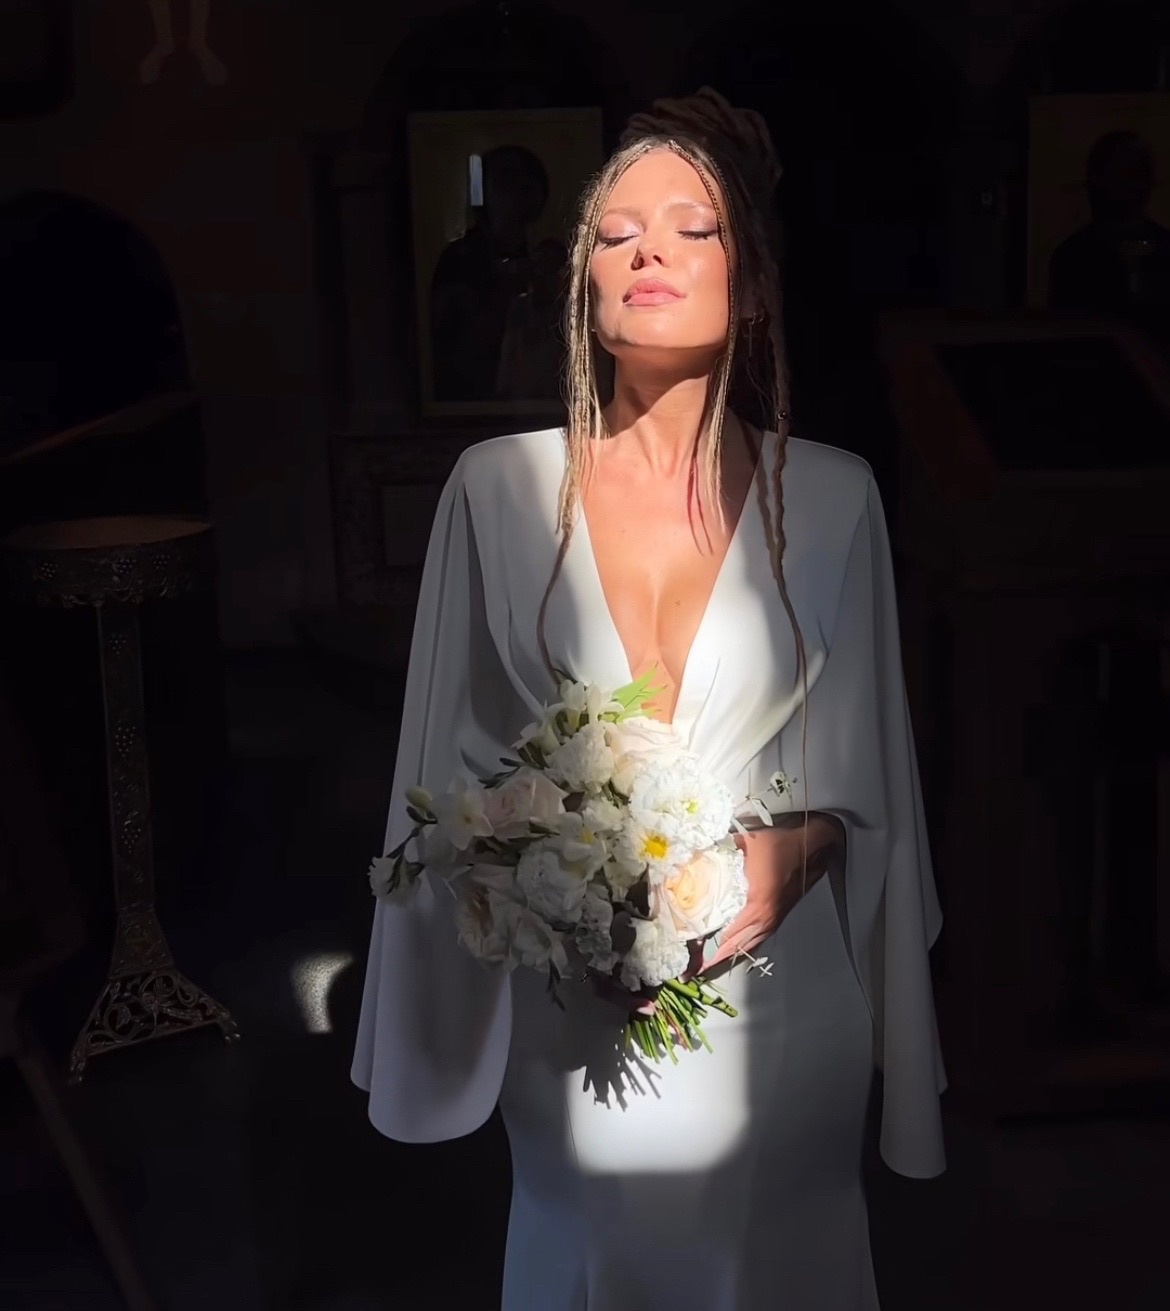 "С голыми сиськами": подписчики раскритиковали платье Риты Дакоты для венчания